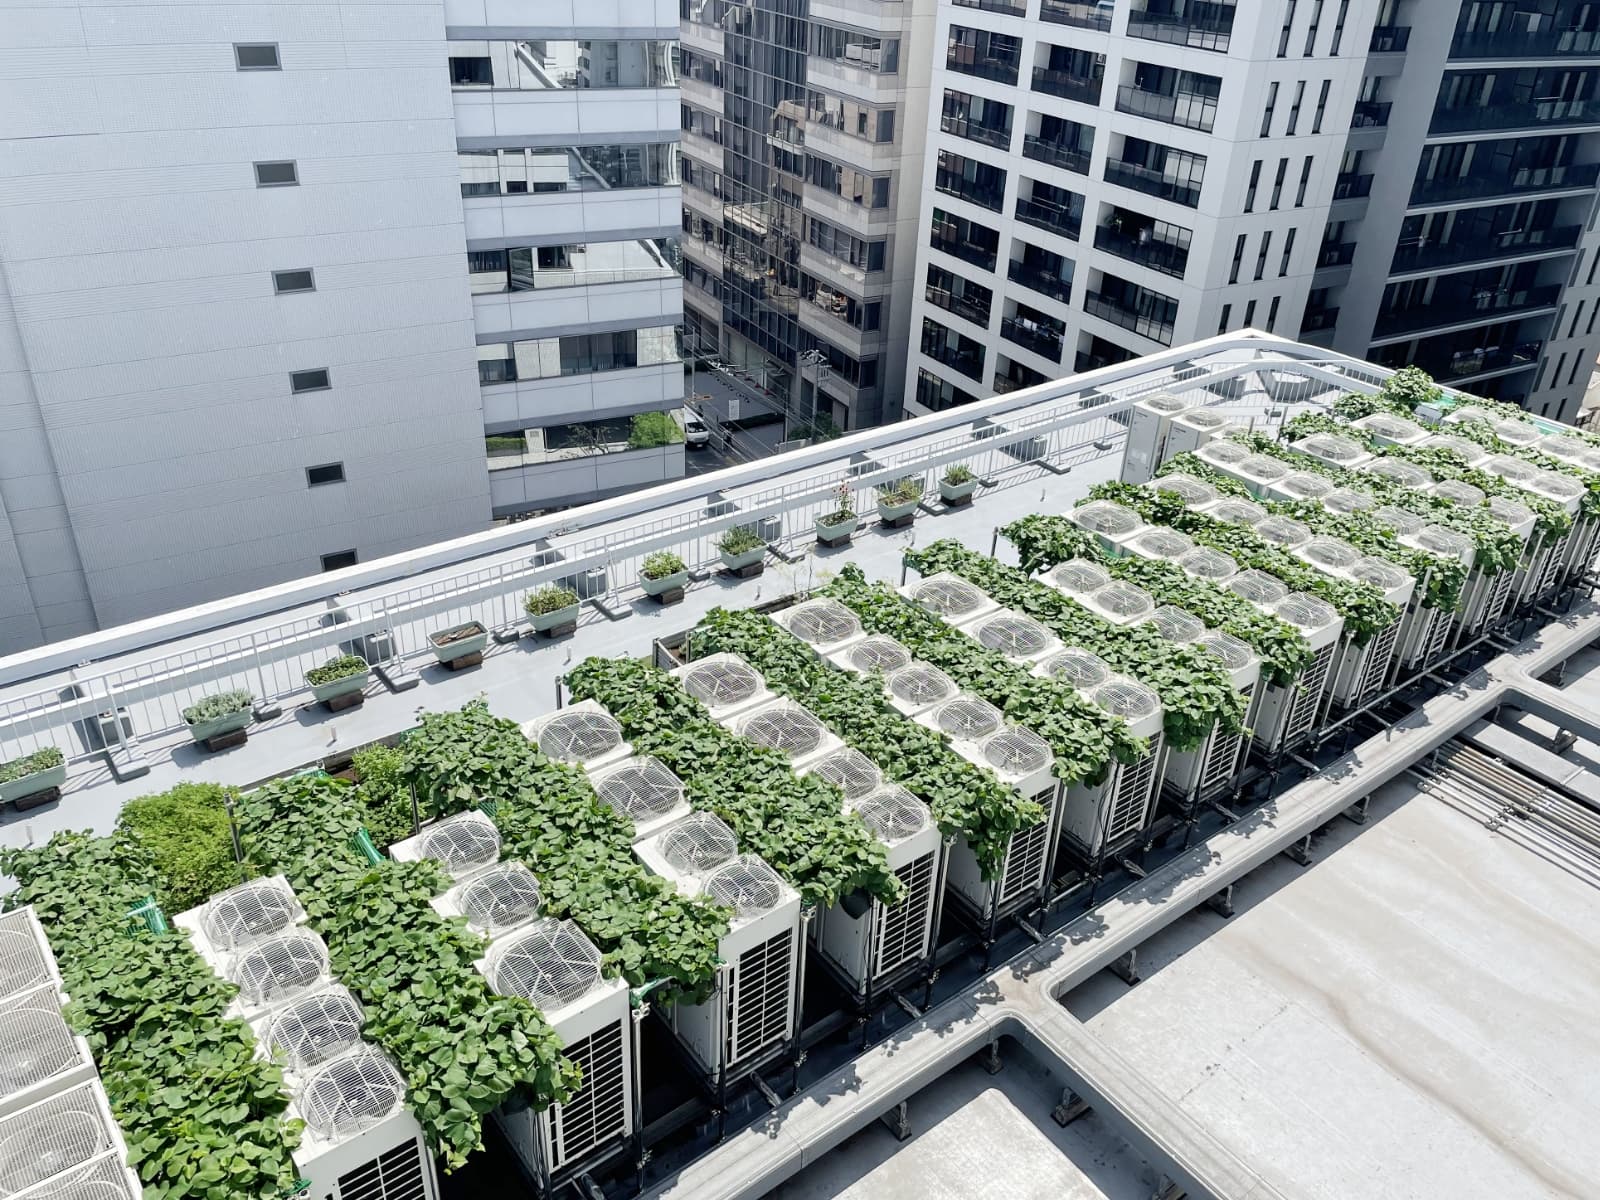 ウノサワ東急ビル屋上の「室外機芋緑化システム」